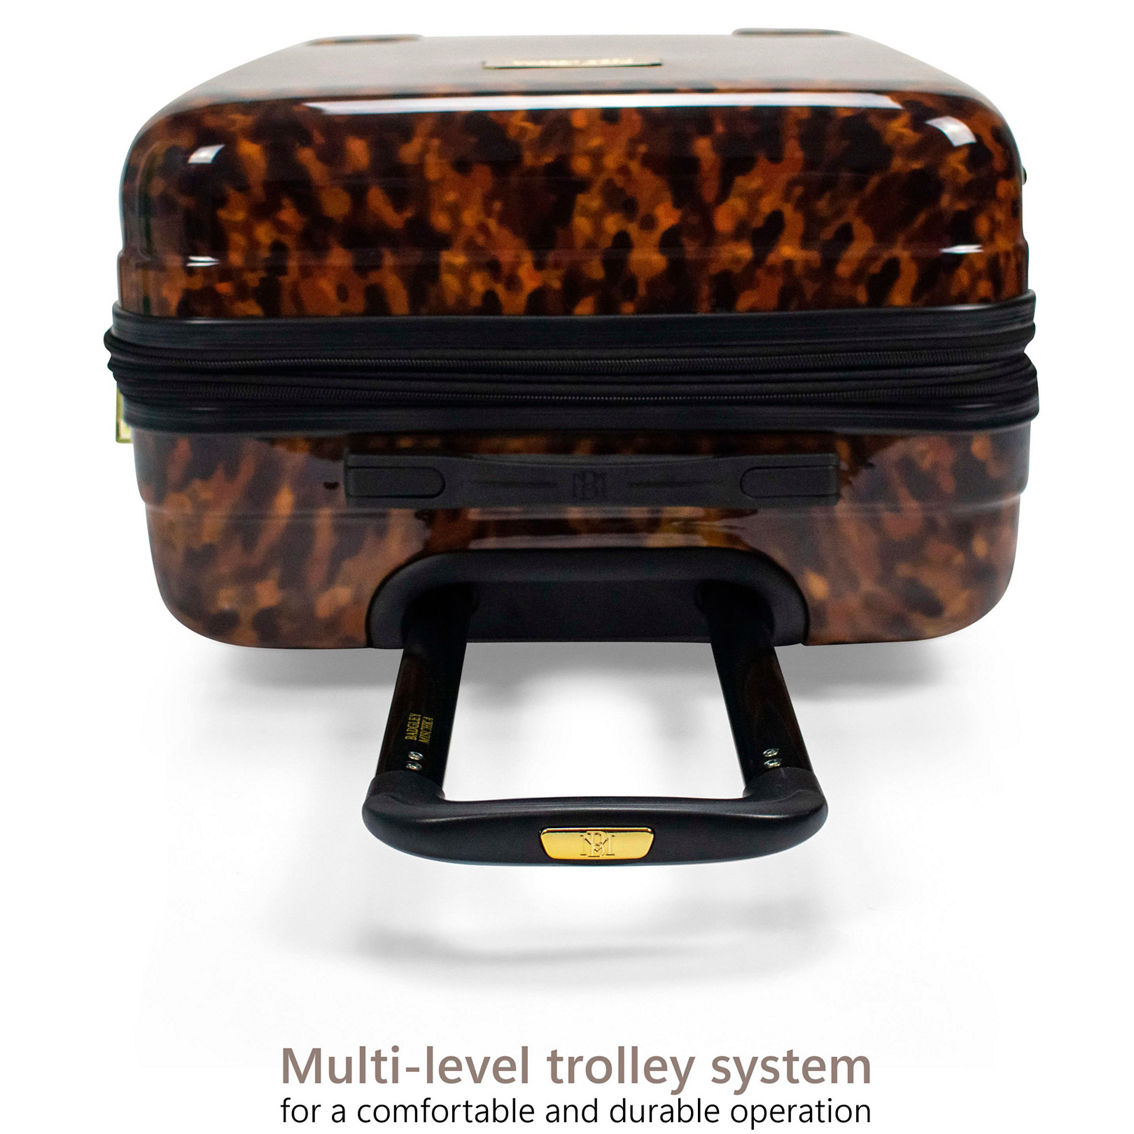 BADGLEY MISCHKA Tortoise 3 Piece Expandable Luggage Set - Image 3 of 5